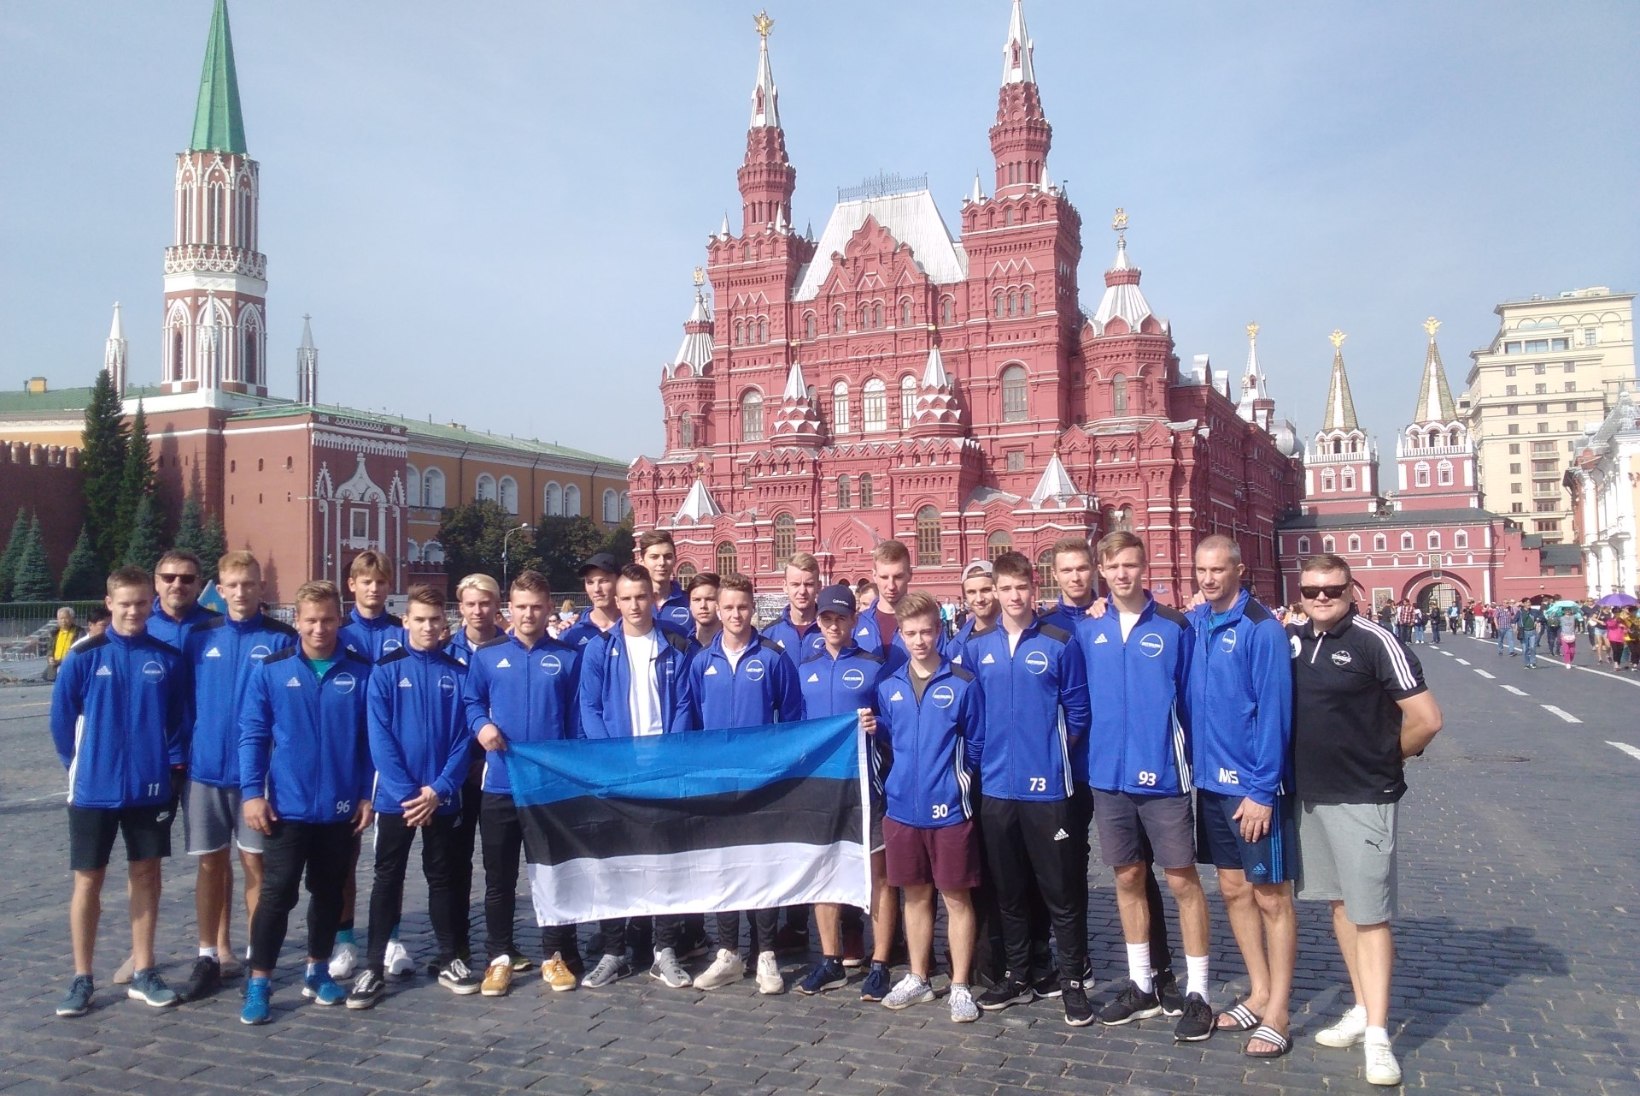 Prantsusmaast jagu saanud Eesti noortekoondis kohtub otsustavas matšis Venemaaga